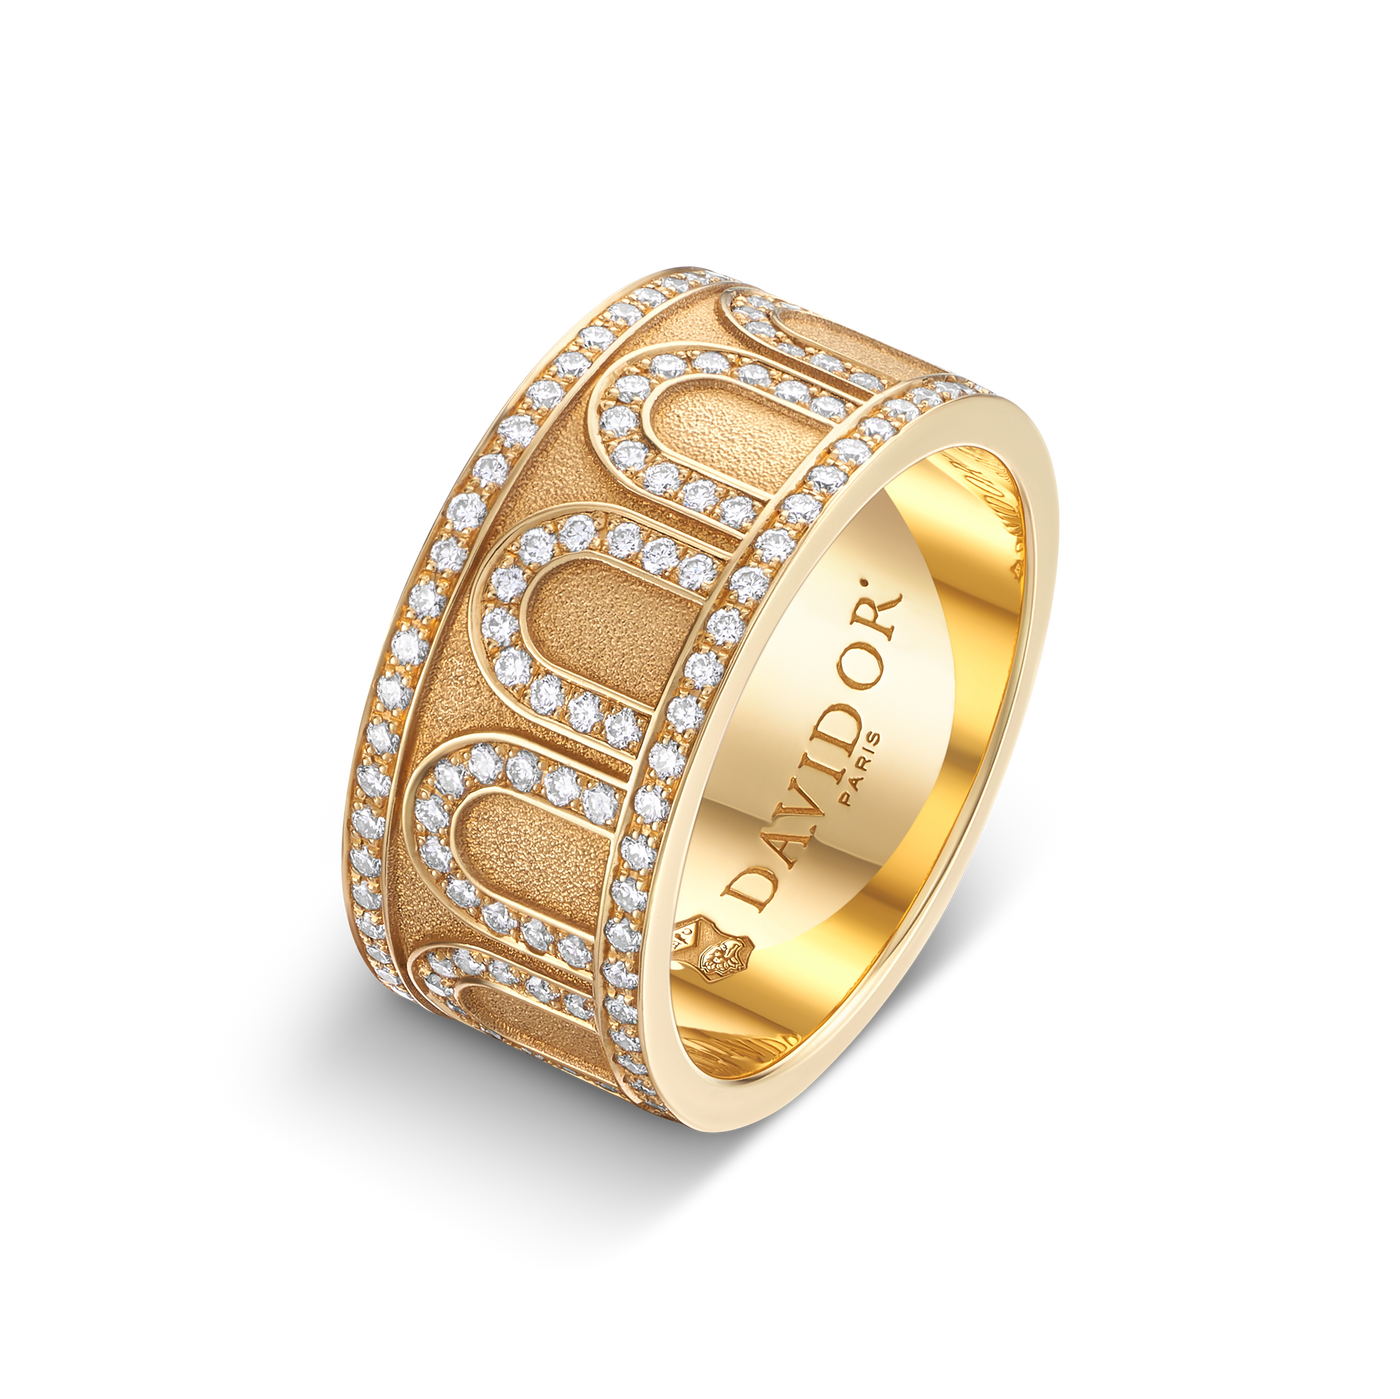 L'Arc de DAVIDOR Ring GM, 18k Yellow Gold with Satin Finish and Palais Diamonds - DAVIDOR